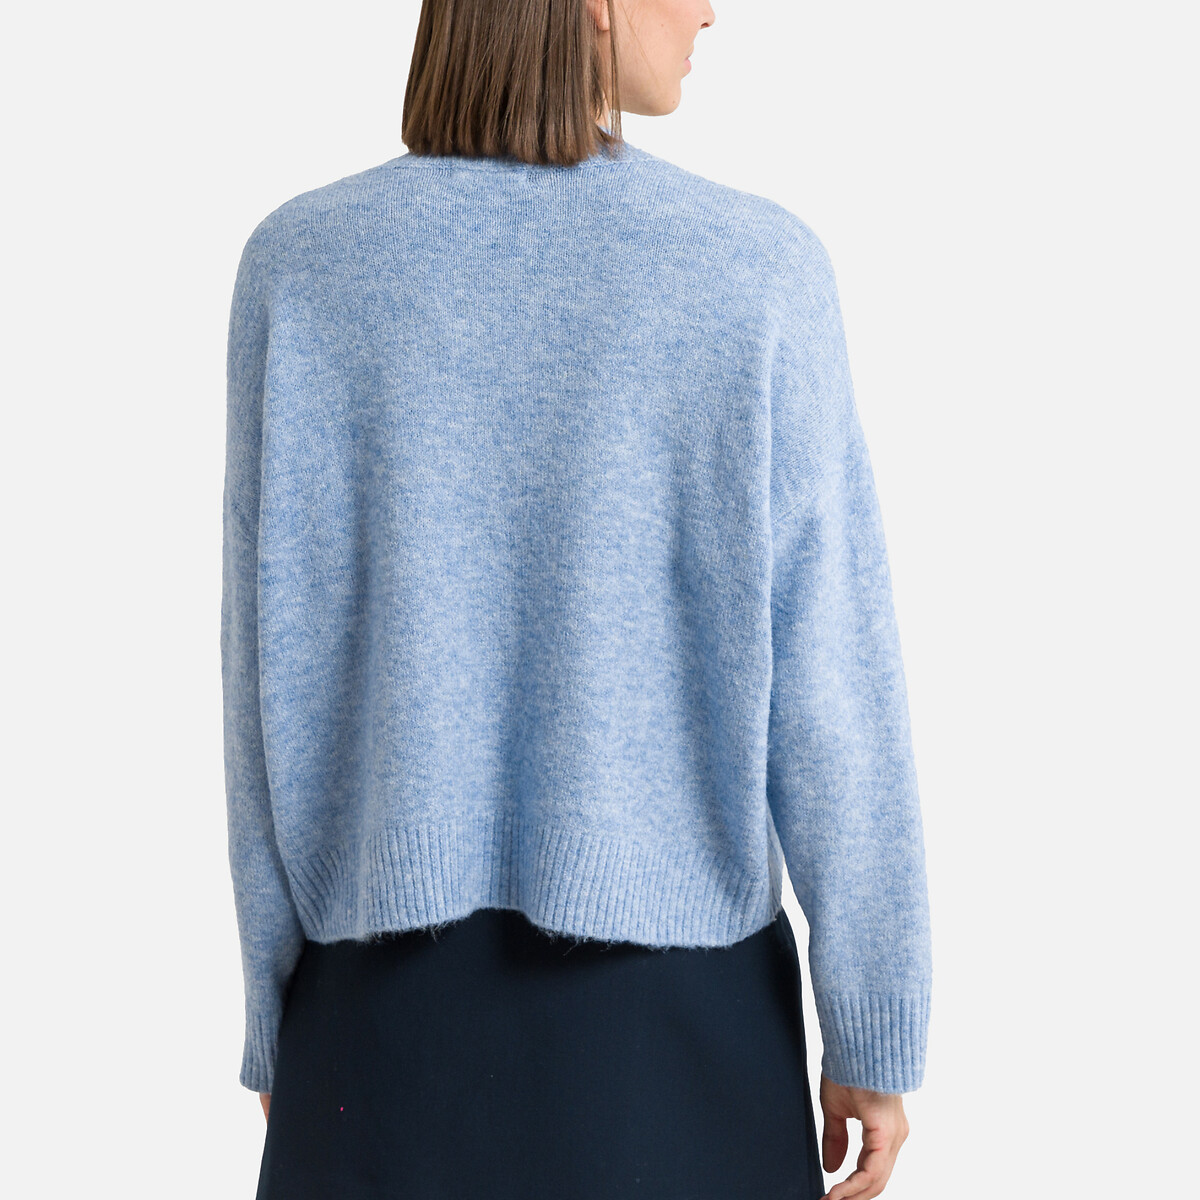 Пуловер Короткий из пышного трикотажа XL синий LaRedoute, размер XL - фото 4